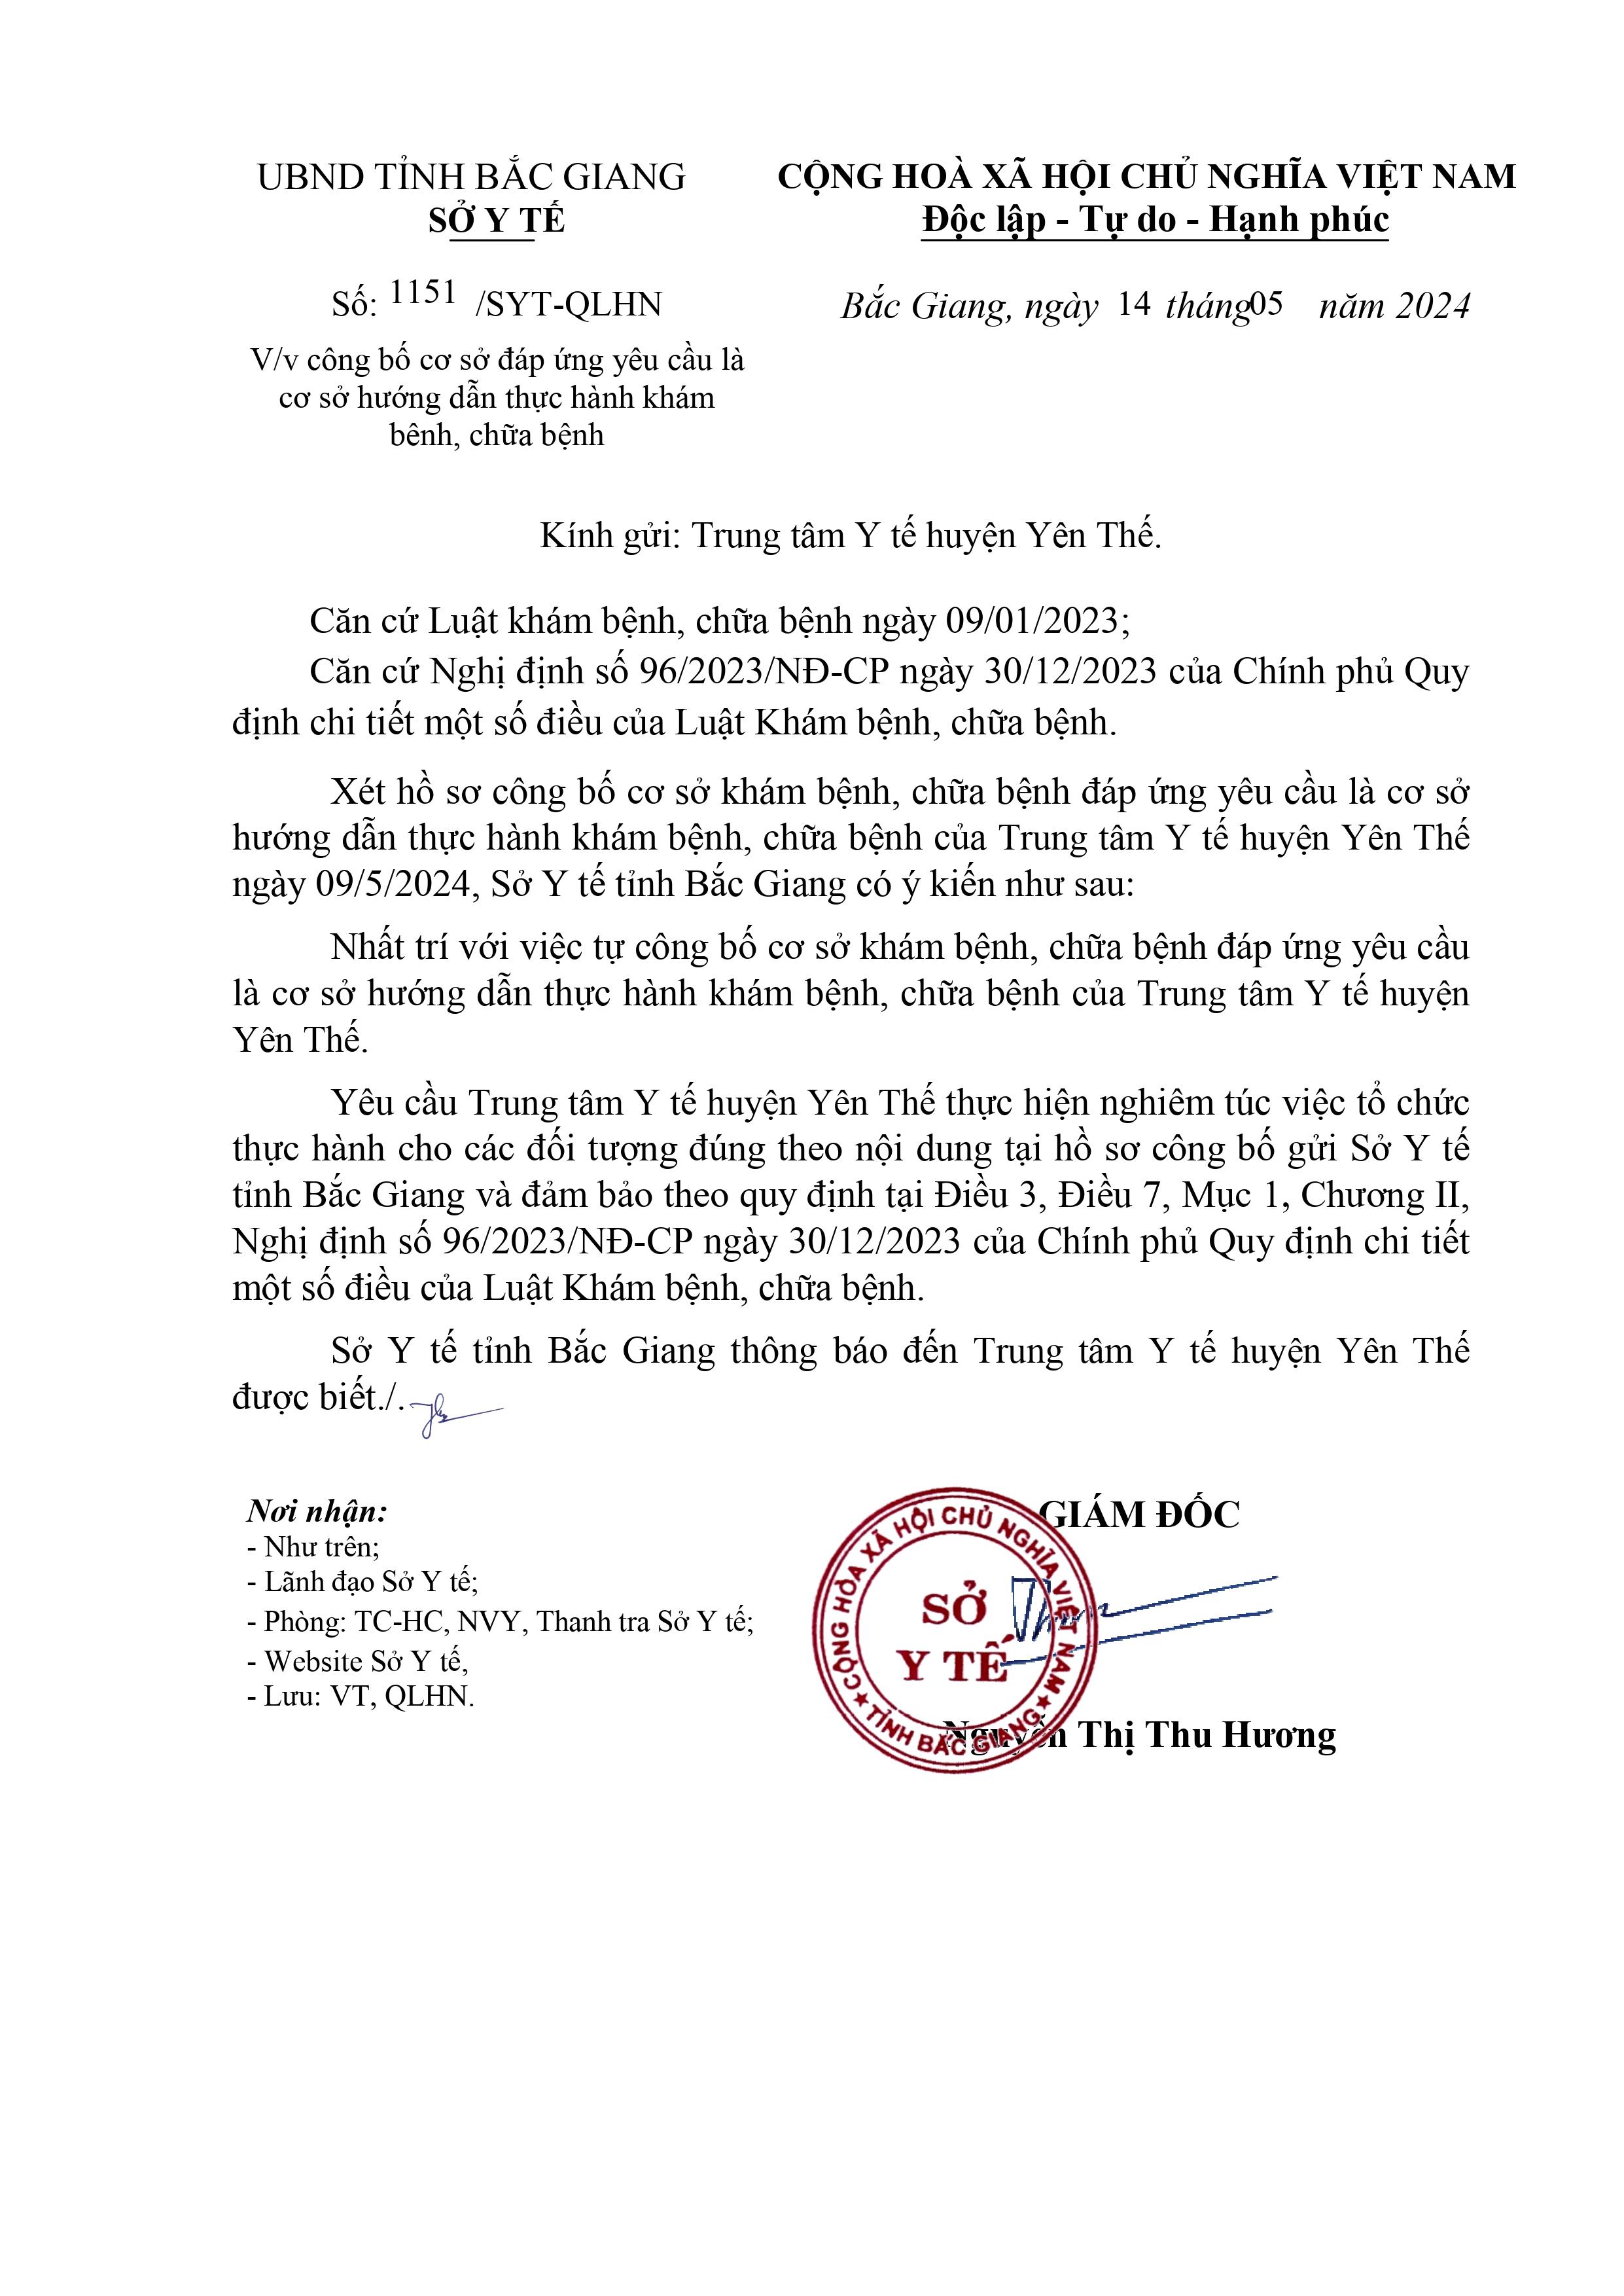 Trung tâm Y tế huyện Yên Thế được công bố là cơ sở hướng dẫn thực hành khám bệnh, chữa bệnh|https://trungtamytehuyenyenthe.vn/vi_VN/chi-tiet-tin-tuc/-/asset_publisher/M0UUAFstbTMq/content/trung-tam-y-te-huyen-yen-the-uoc-cong-bo-la-co-so-huong-dan-thuc-hanh-kham-benh-chua-benh